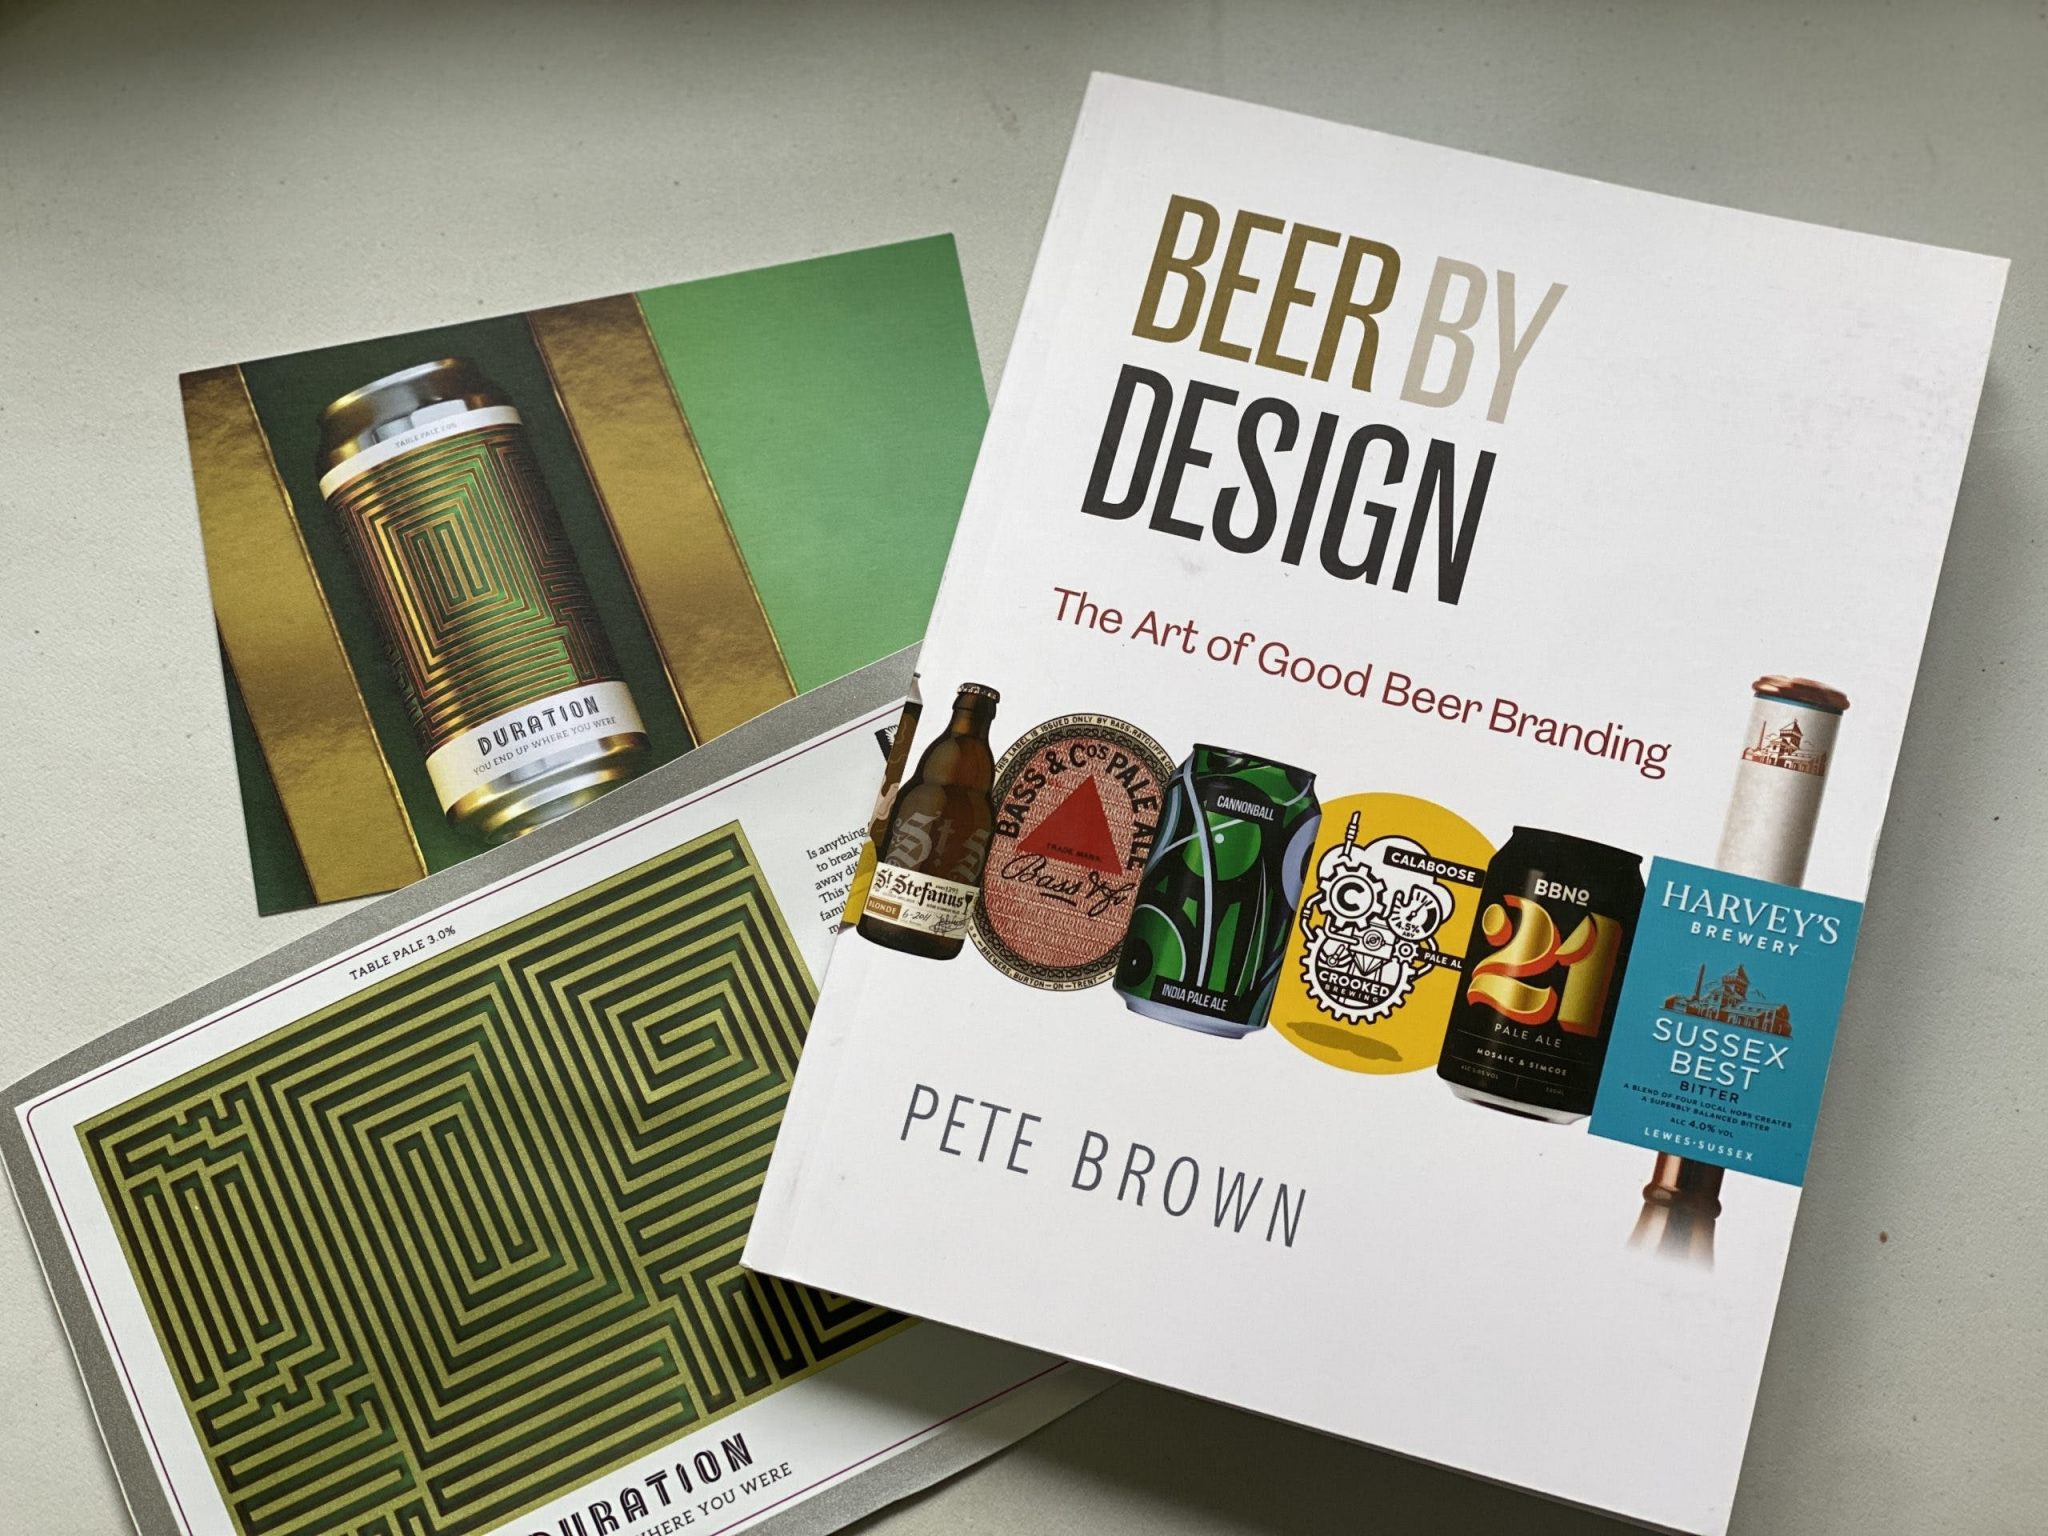 "Beer by design" il libro di Pete Brown